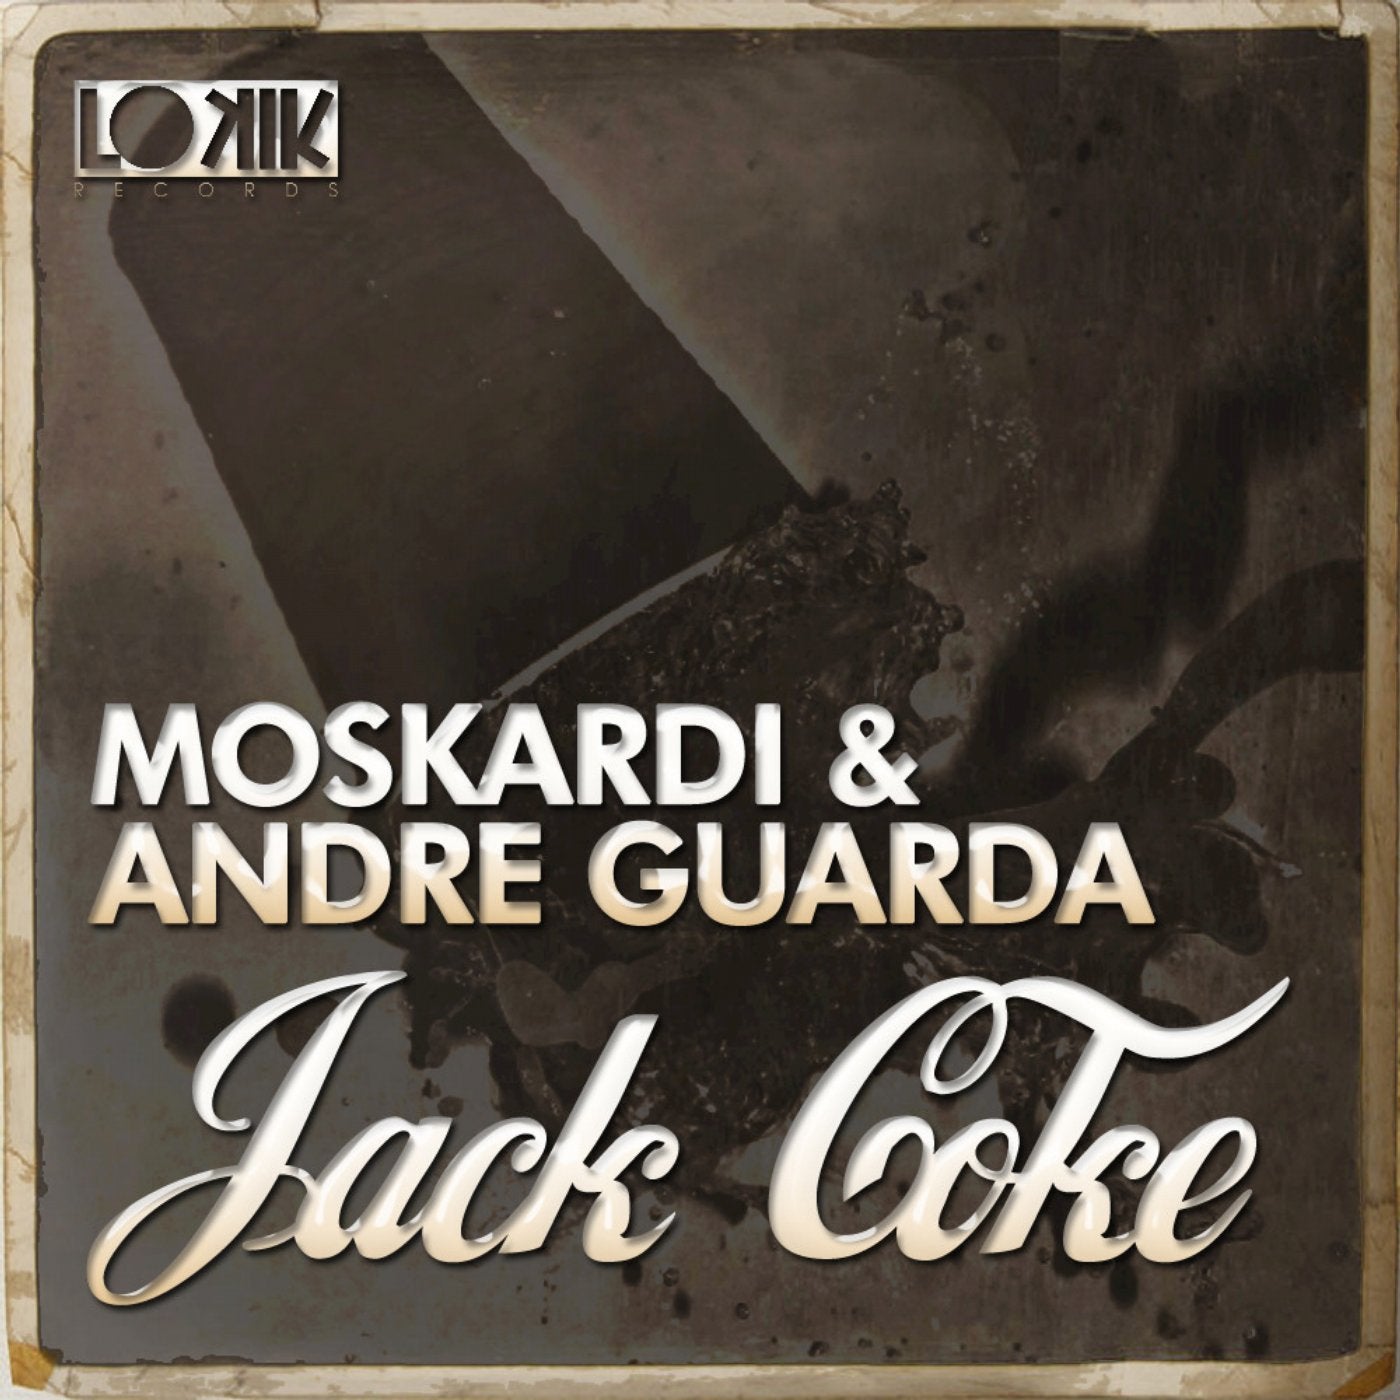 Jack Coke EP